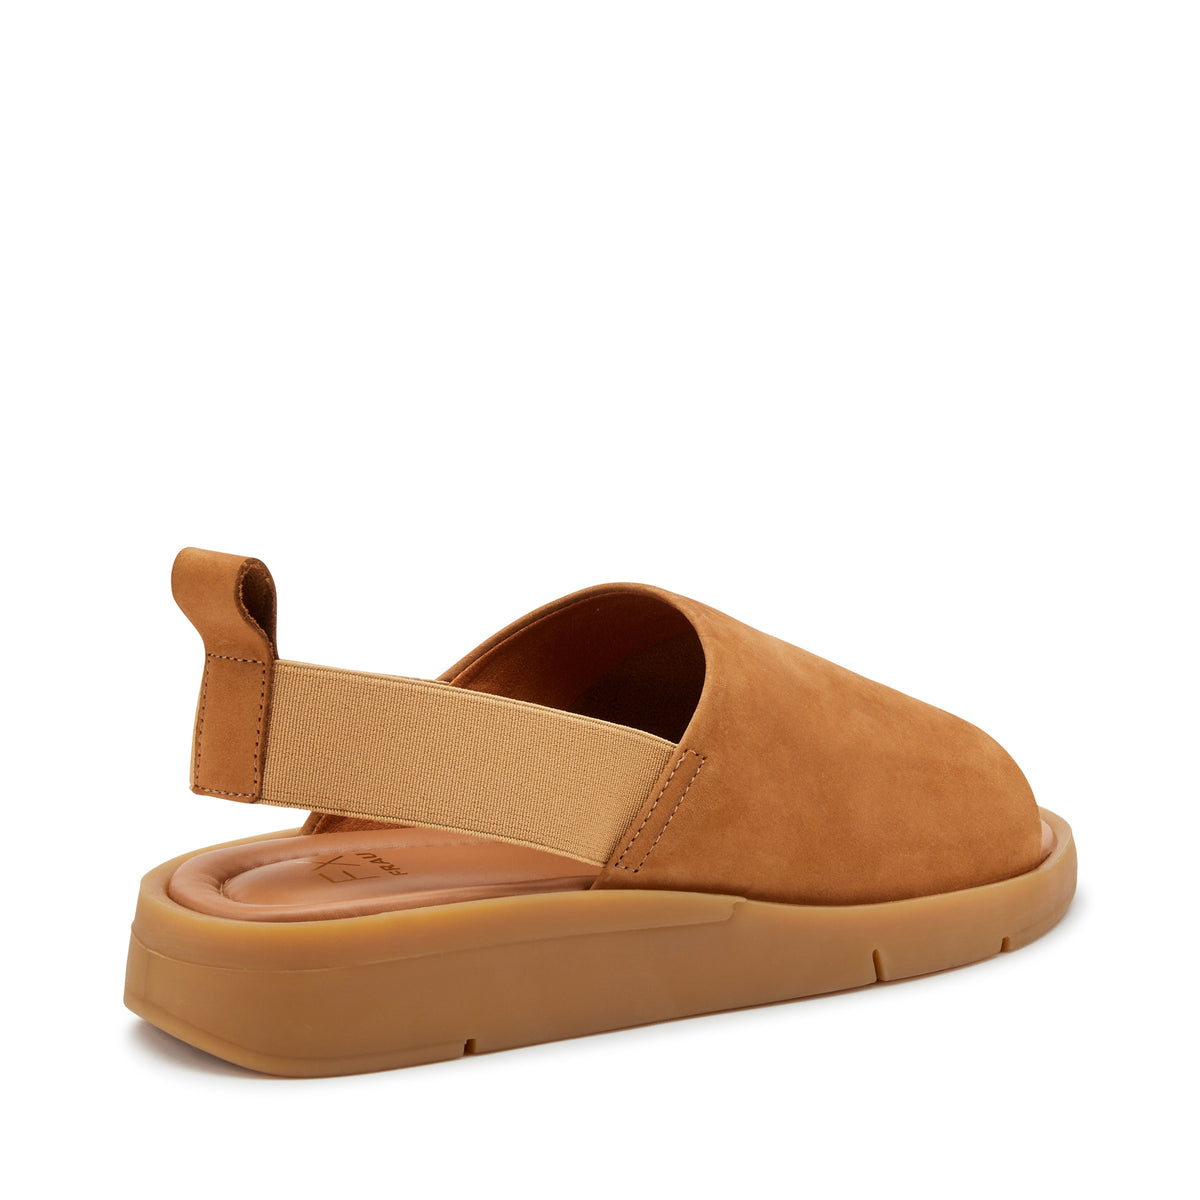 Sandalo Soft Con Fascione Marrone